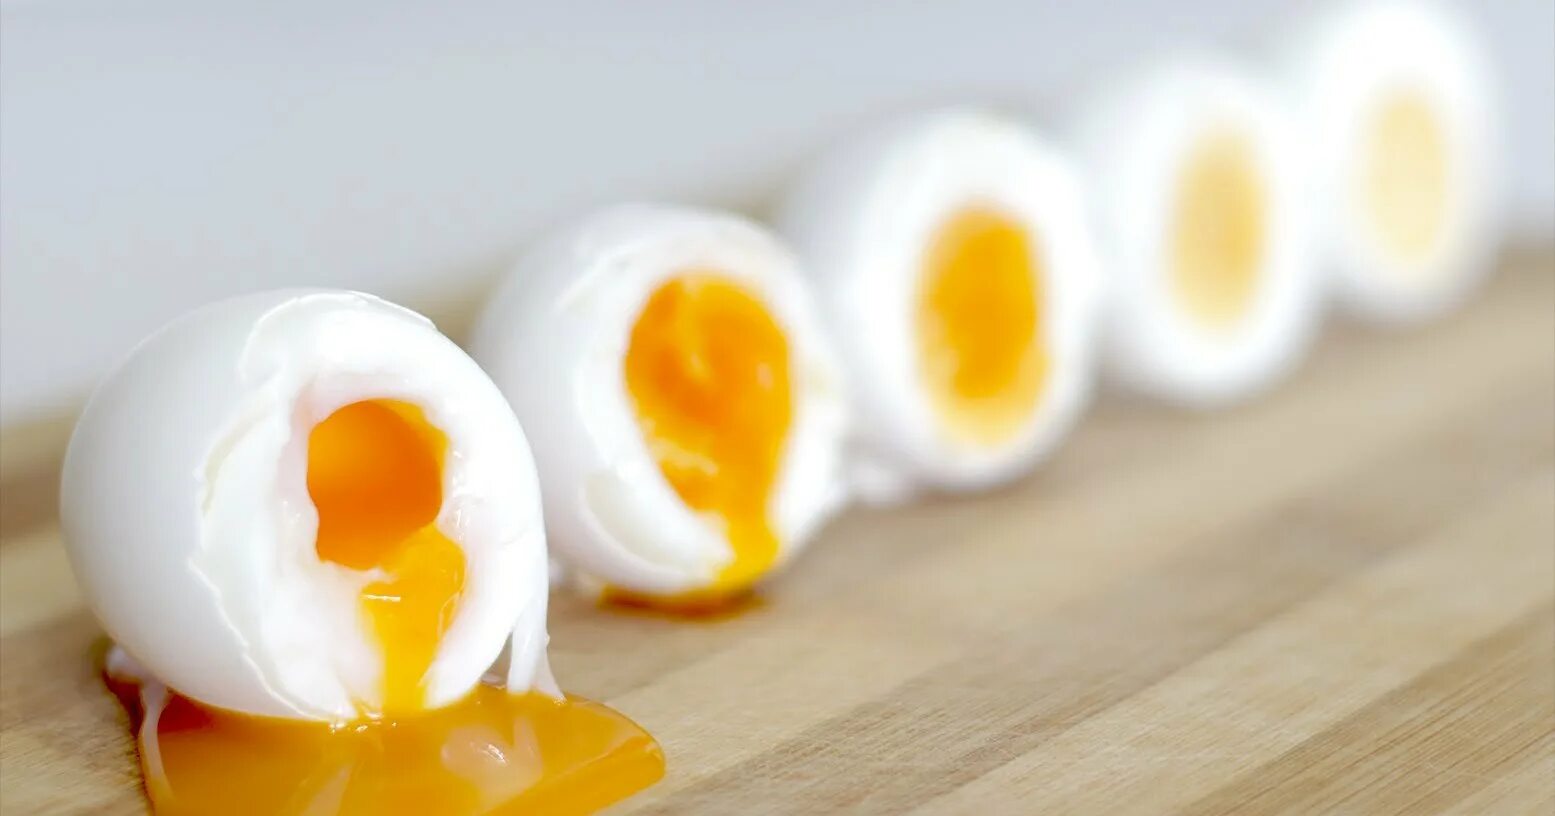 Сколько нужно варить яйца чтобы были жидкие. Яйцо вареное всмятку. Яйцо всмятку яйца вкрутую. Яйца куриные вареные всмятку. Перепелиные яйца всмятку.